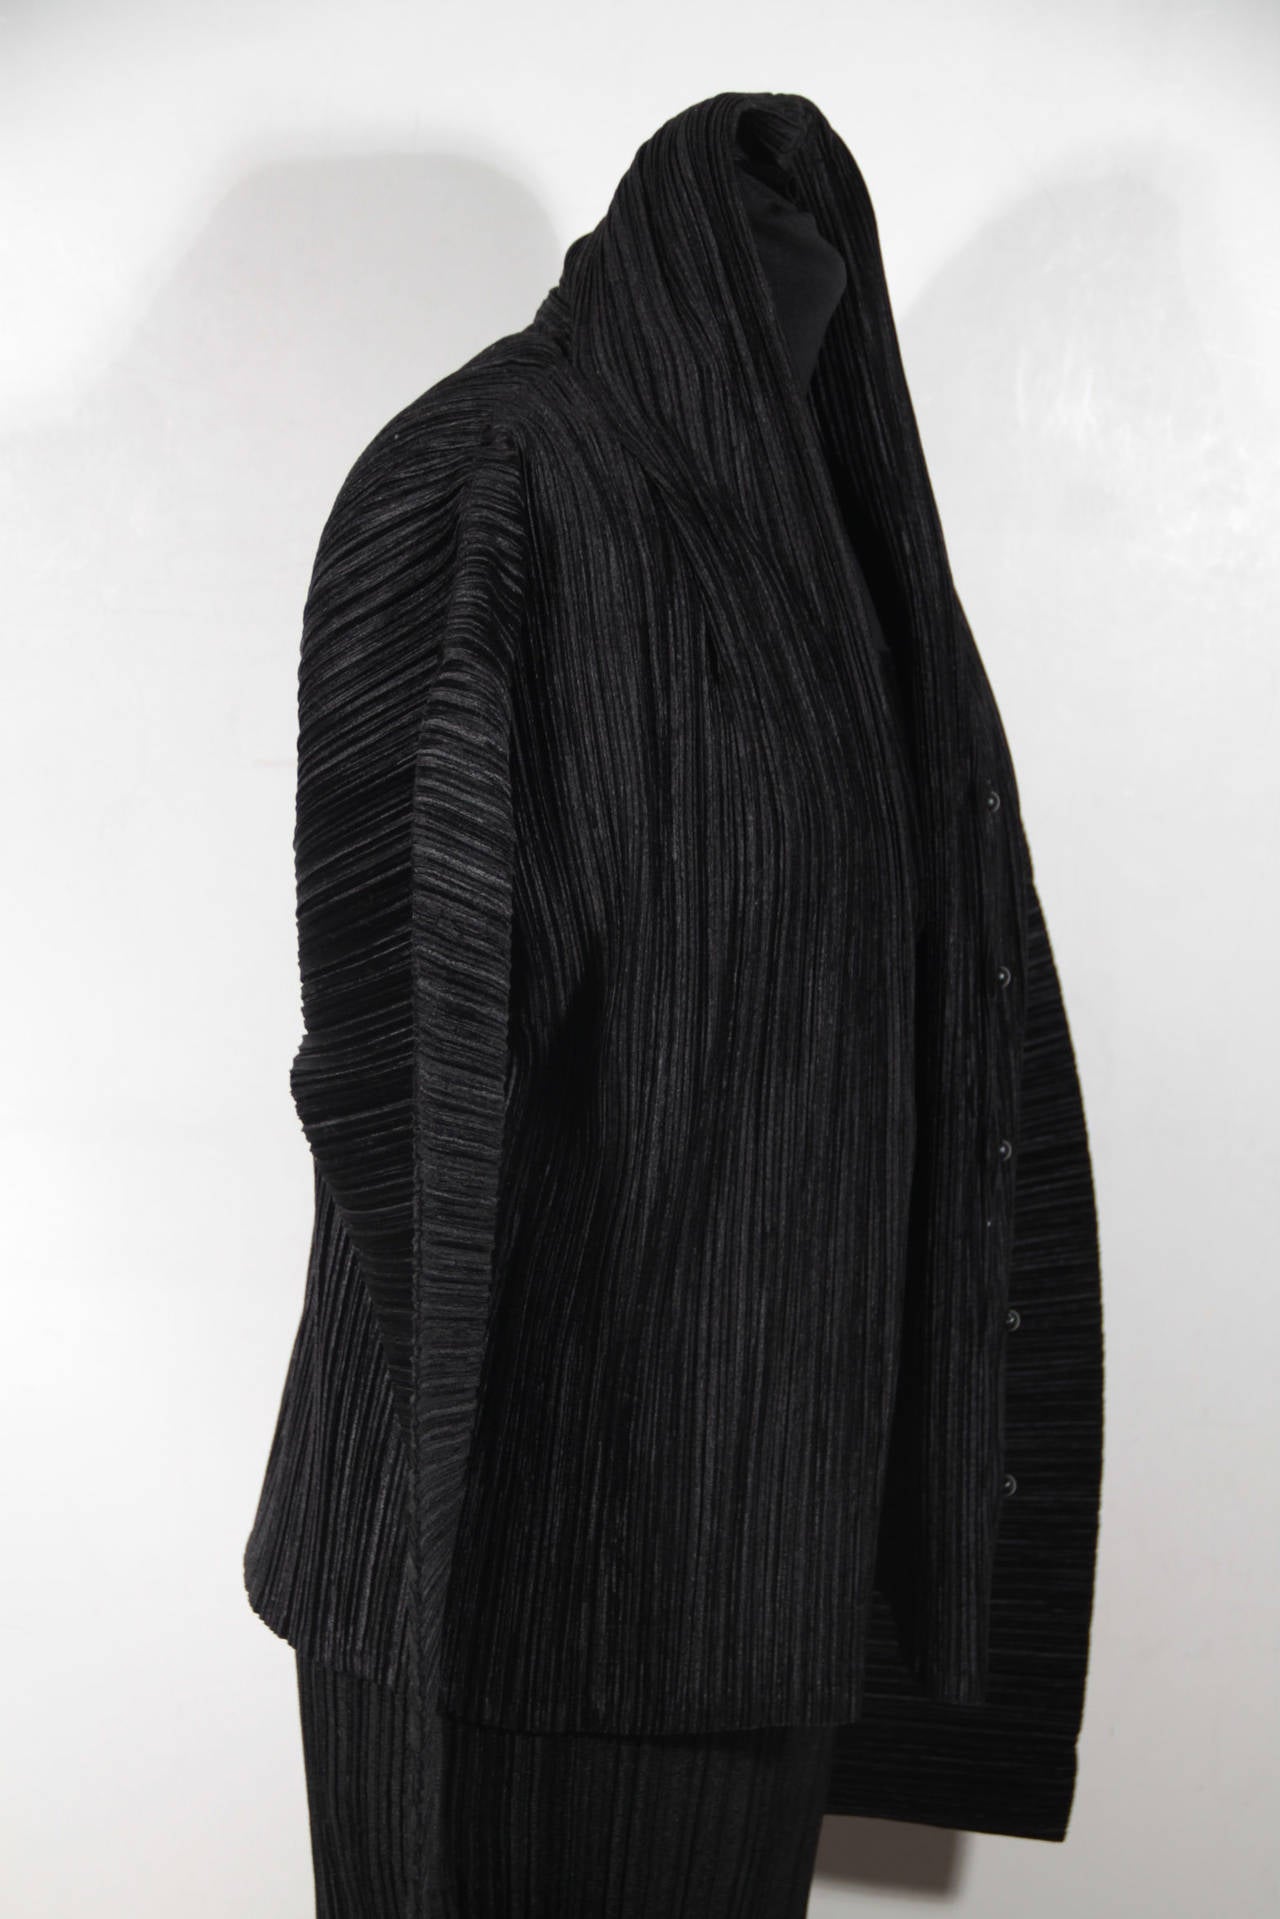 ISSEY MIYAKE Black Pleated DRESS SUIT Jacket & Maxi Dress SET Size S 1